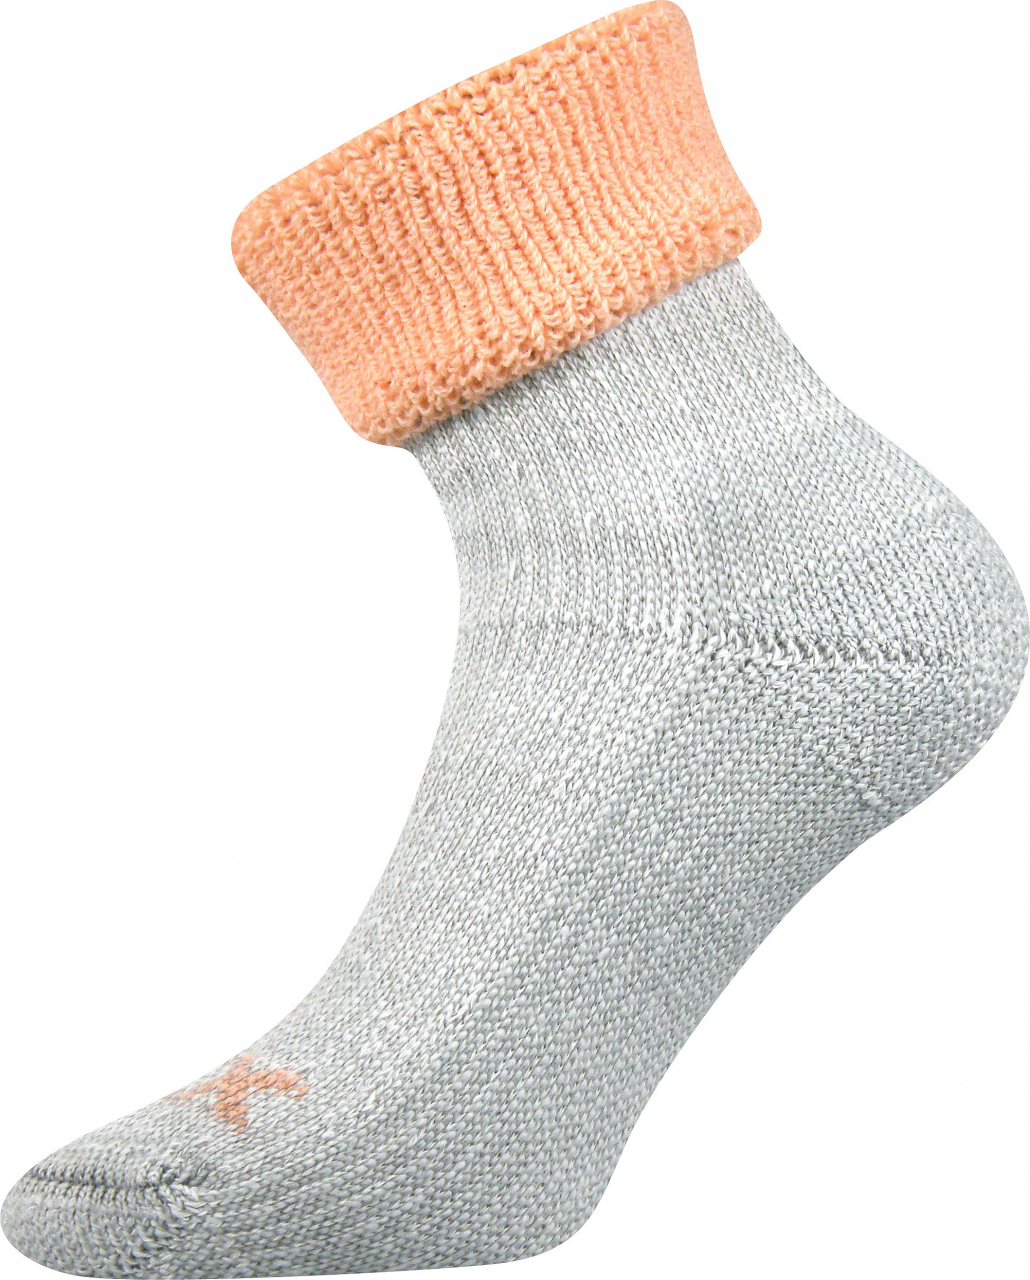 Ponožky dámské thermo Voxx Quanta - šedé-oranžové, 35-38